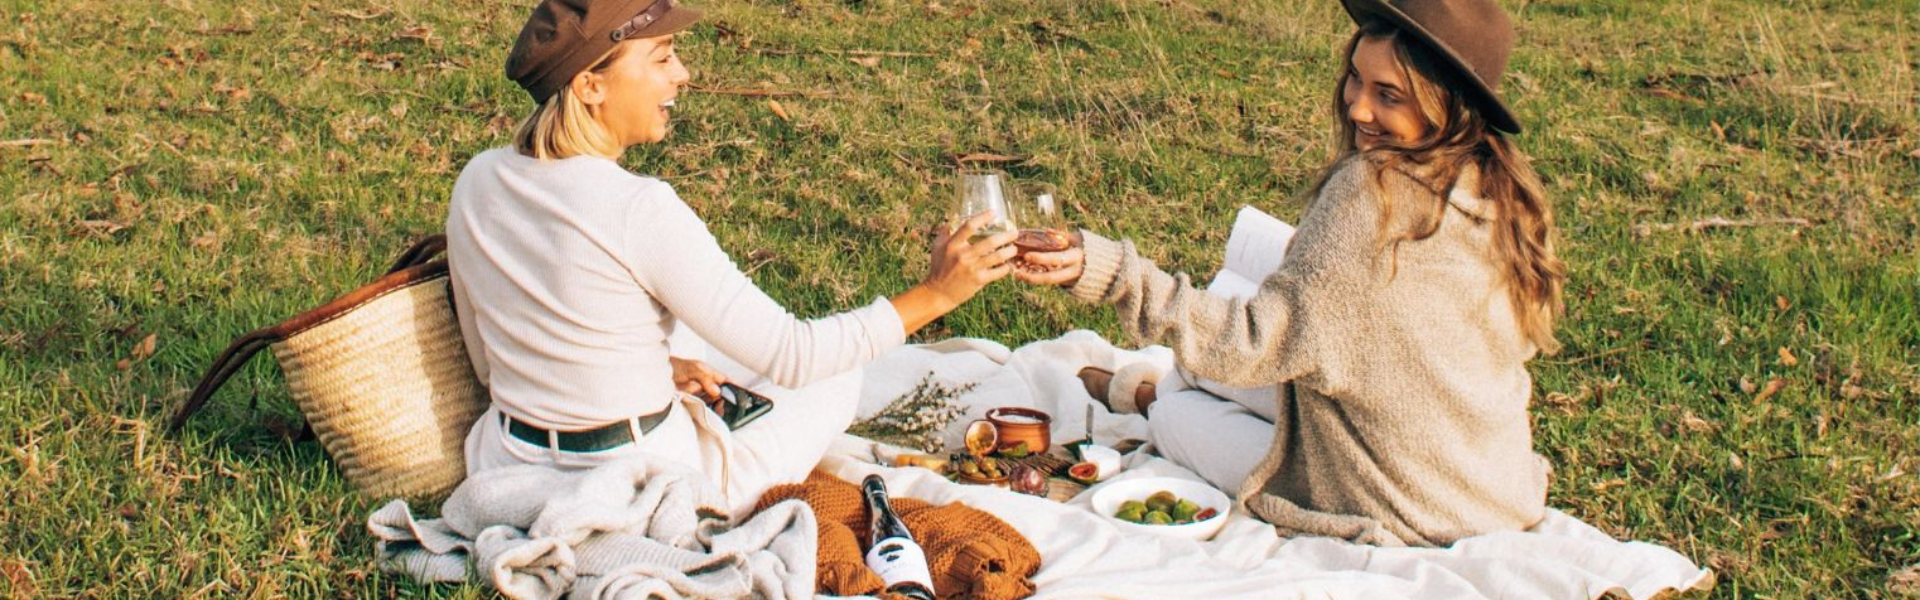 Zwei Frauen picknicken in der Wiese